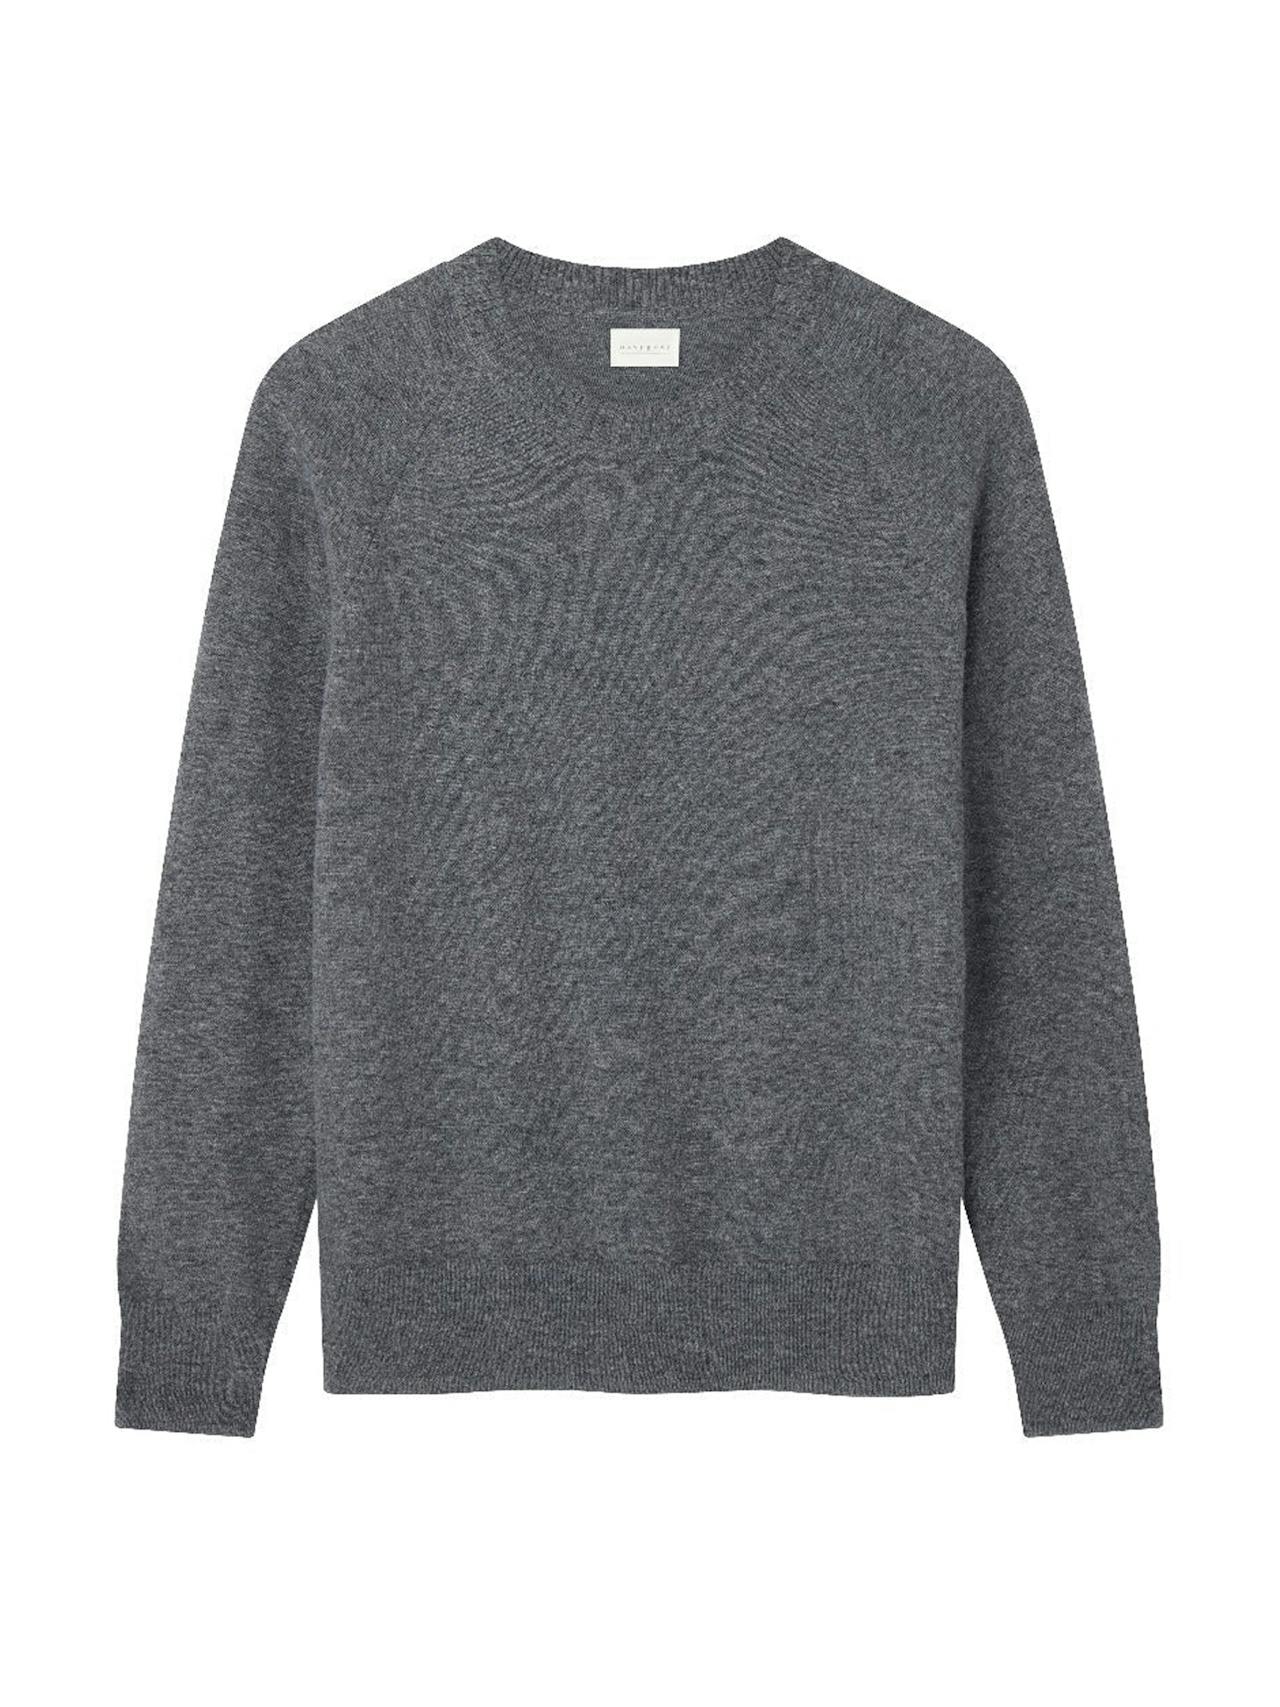 Atlantic grey wool Weekend jumper